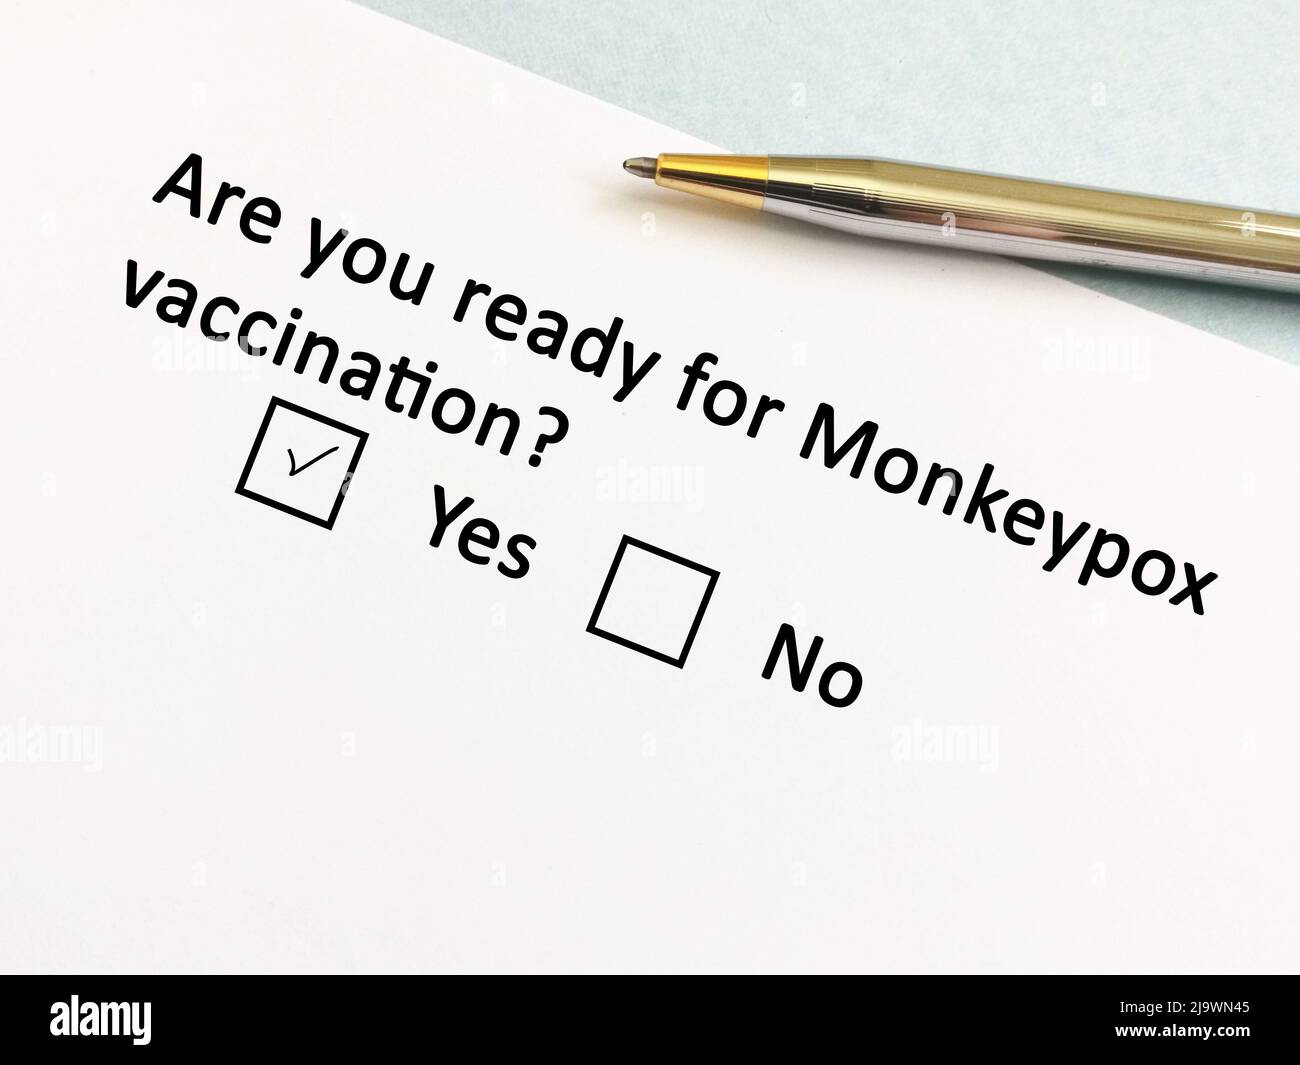 Una persona sta rispondendo alla domanda sull'infezione da Monkeypox. È pronto per la vaccinazione Monkeypox. Foto Stock